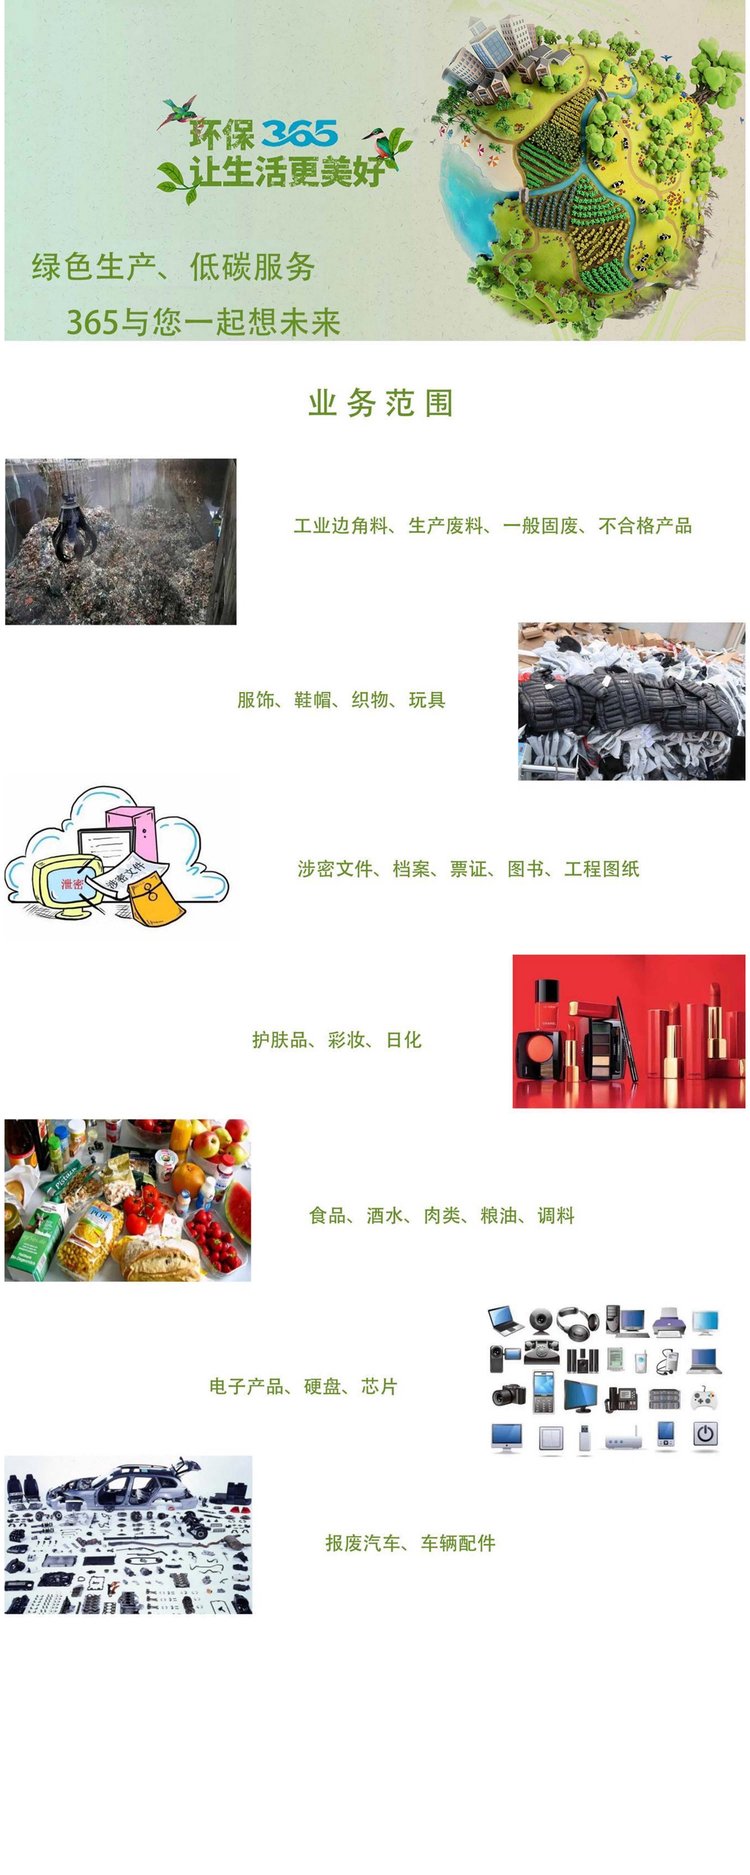 广州黄埔区进口猪肉销毁处置报废机构当日现场焚烧完成